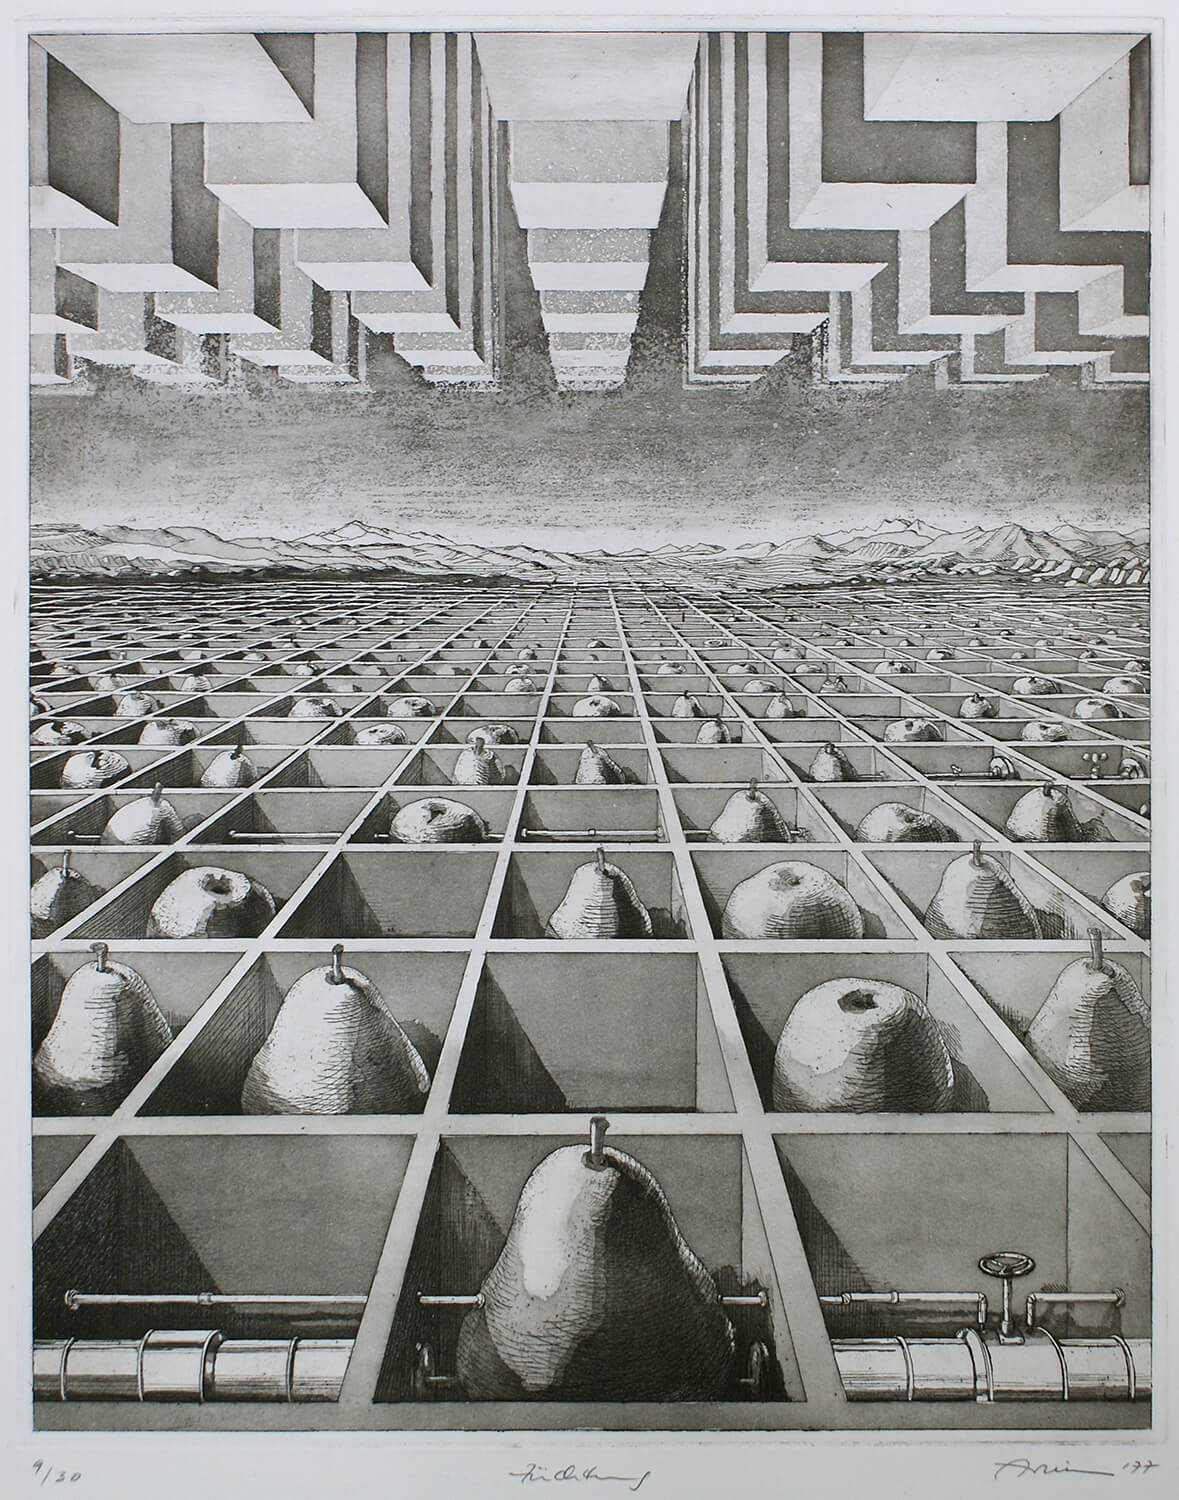 Bettina von Arnim, Züchtung, 1977, Radierung, Auflage: 30, Bild: 48,5 x 38,5 cm, Blatt: 67,5 x 52 cm